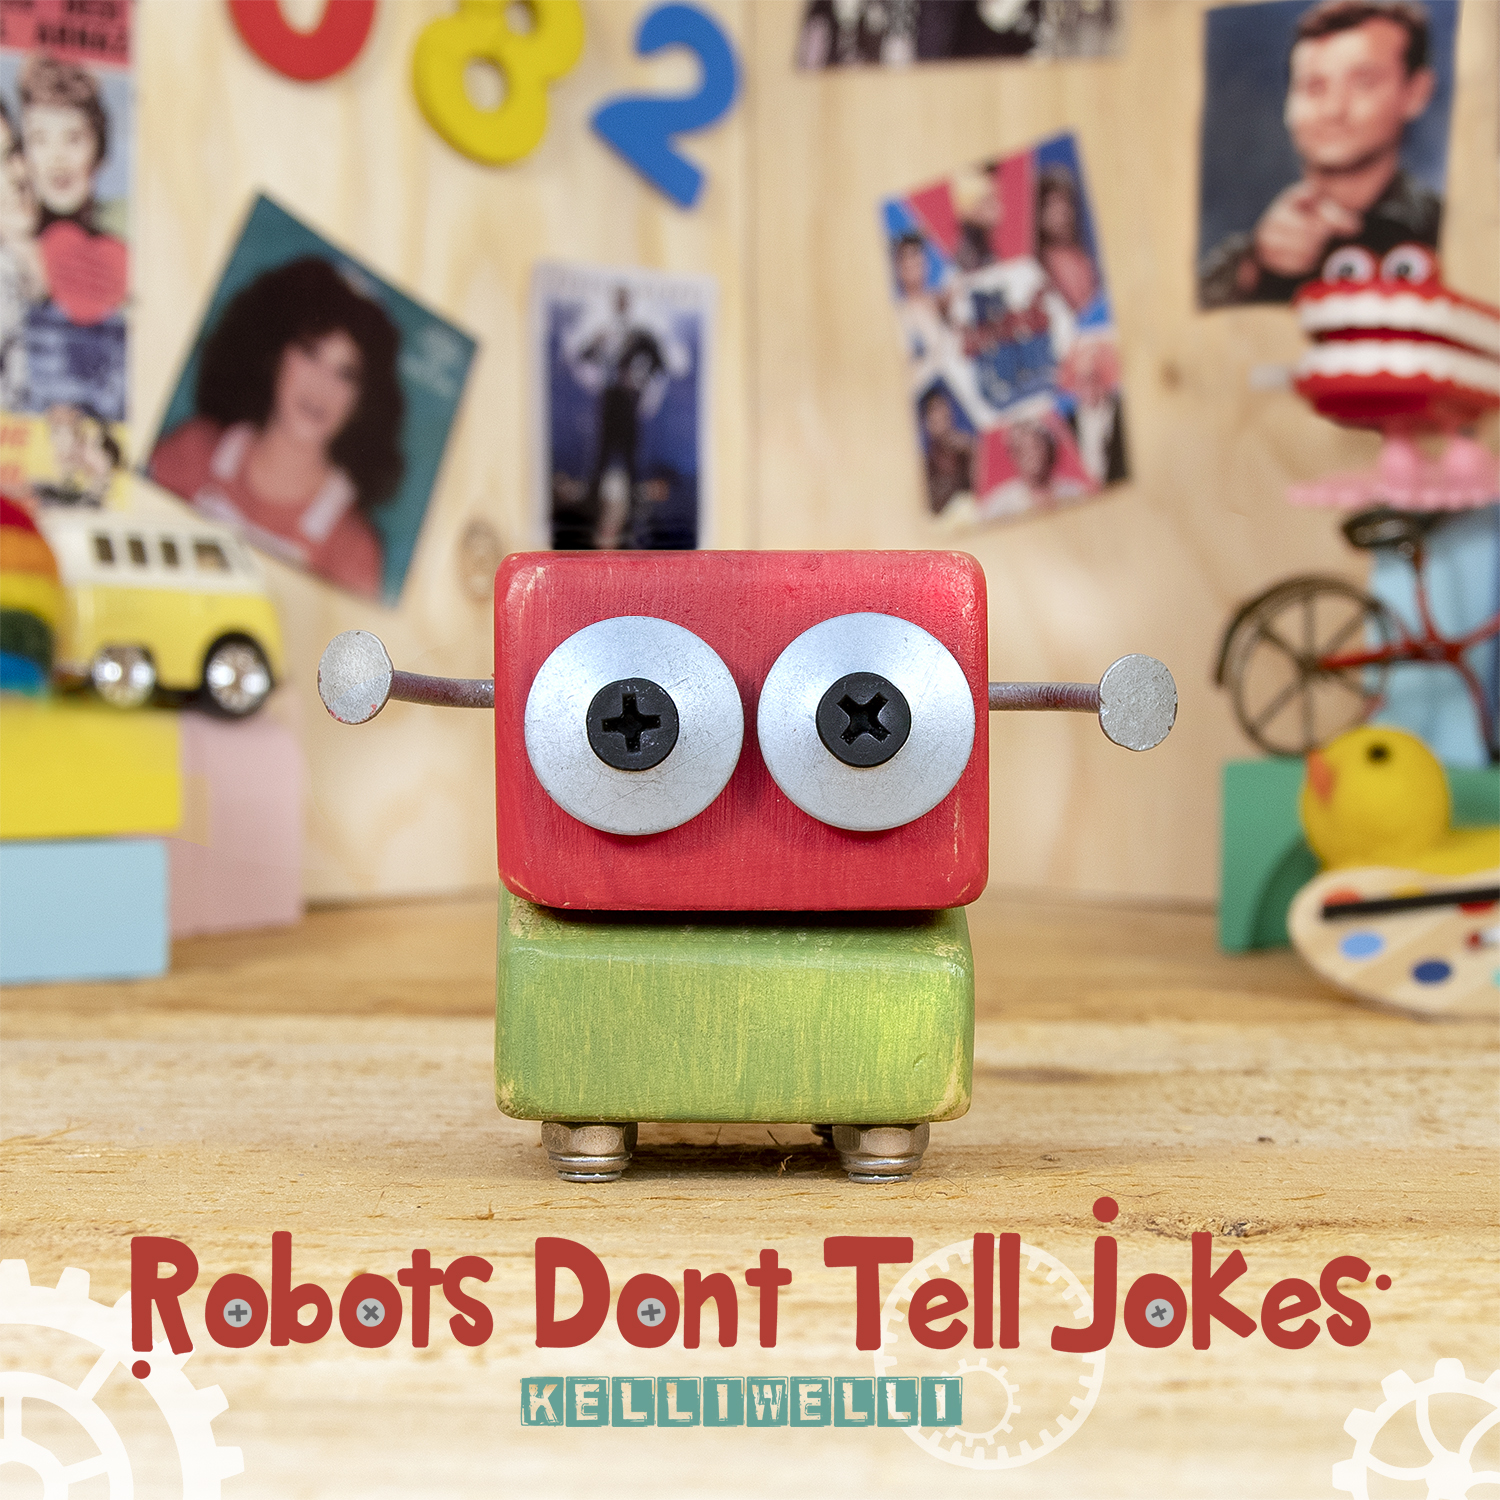 Robots Don’t Tell Jokes